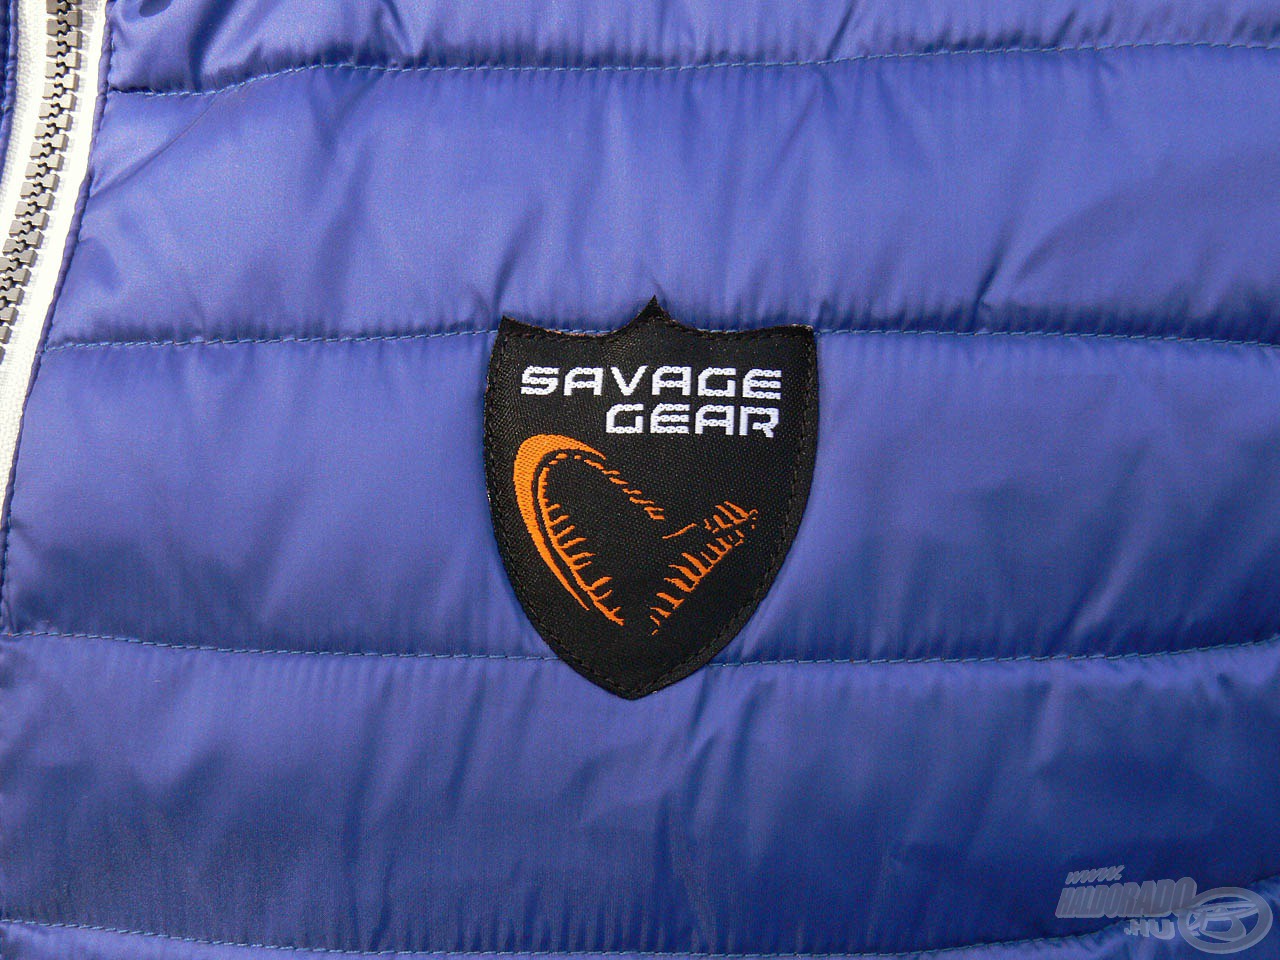 Igényes, hímzett Savage Gear logó teszi teljessé a terméket